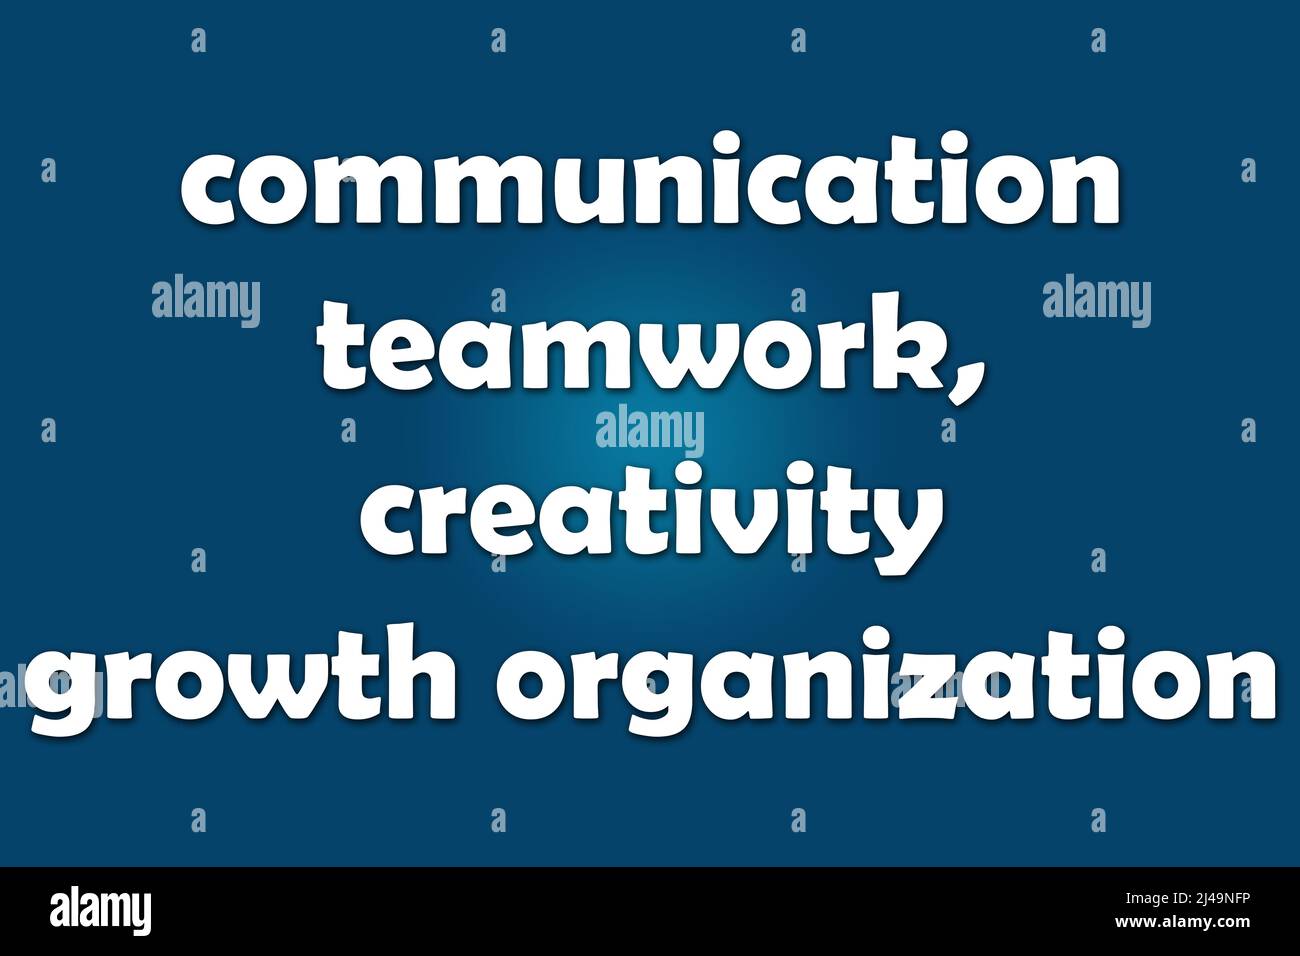 communication teamwork, creativity growth organization. text. dark blue gradient background Stock Photo